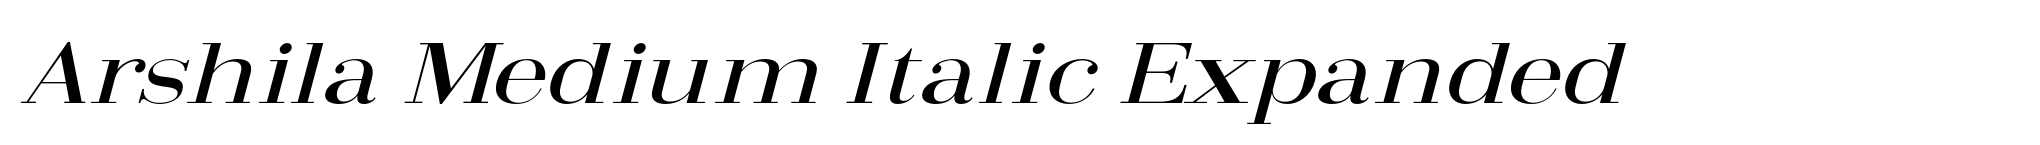 Arshila Medium Italic Expanded image